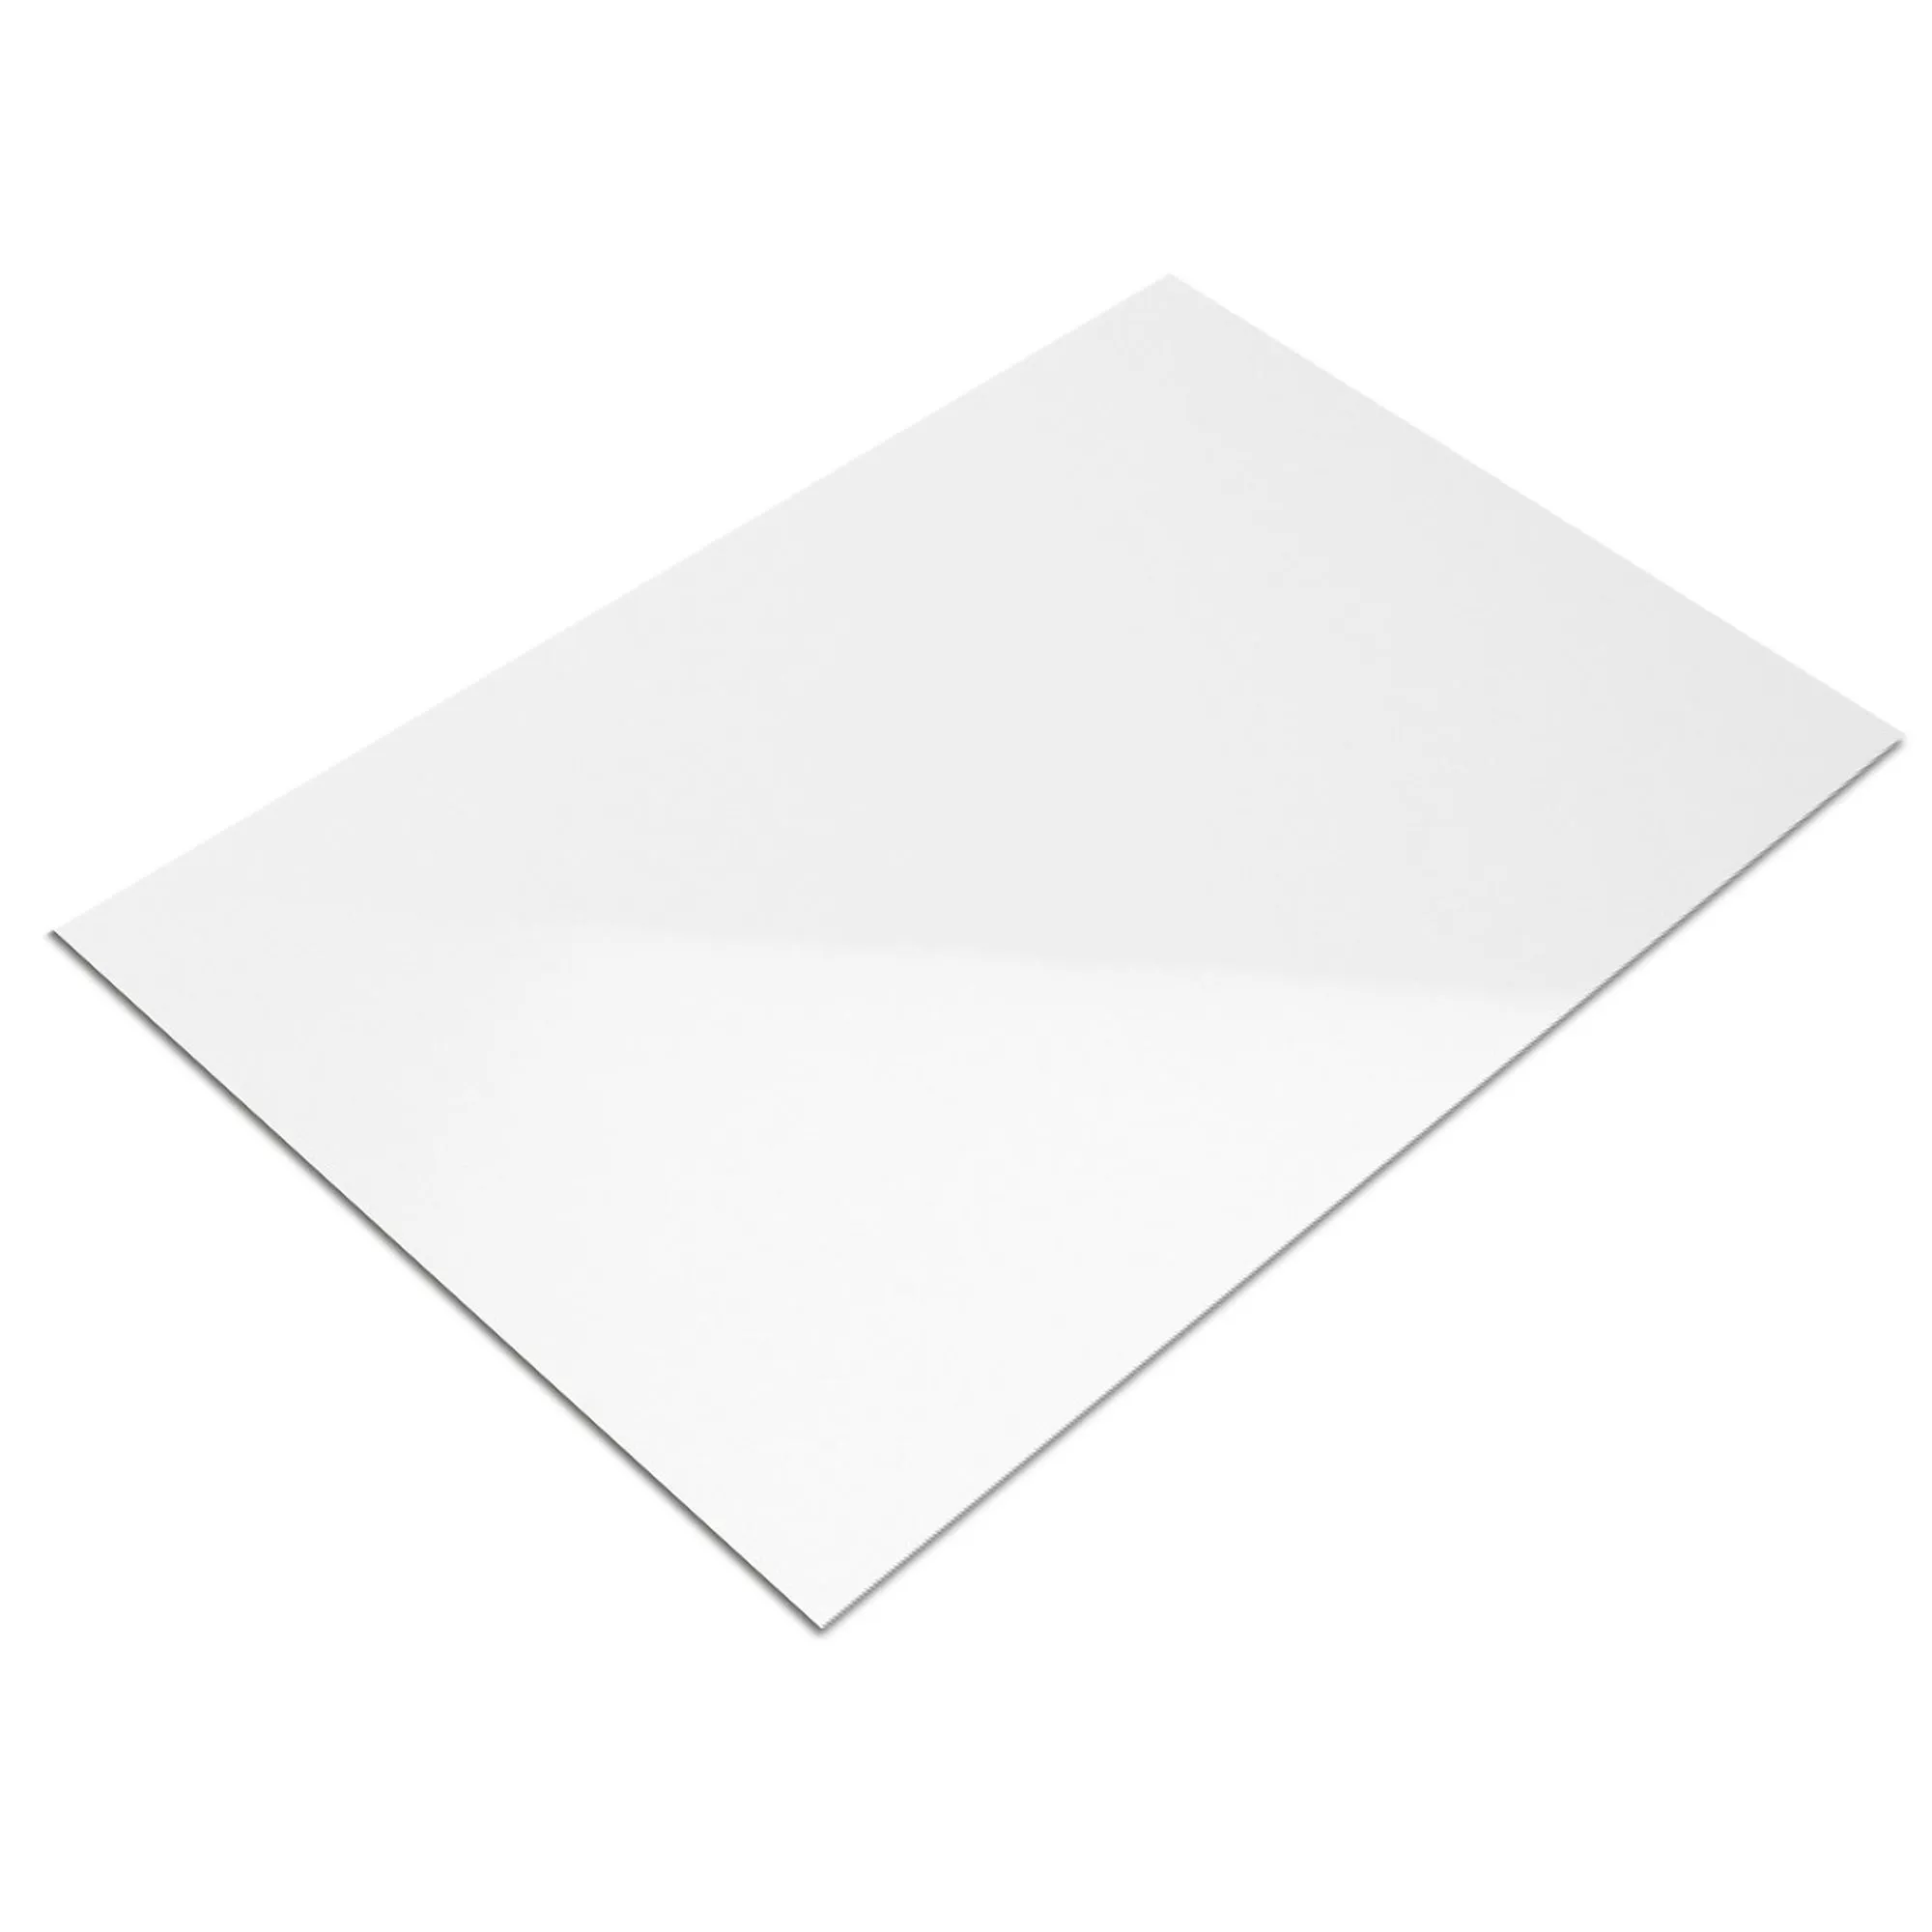 Próbka Płytki Ścienne Fenway Biały Błyszczący 30x60cm